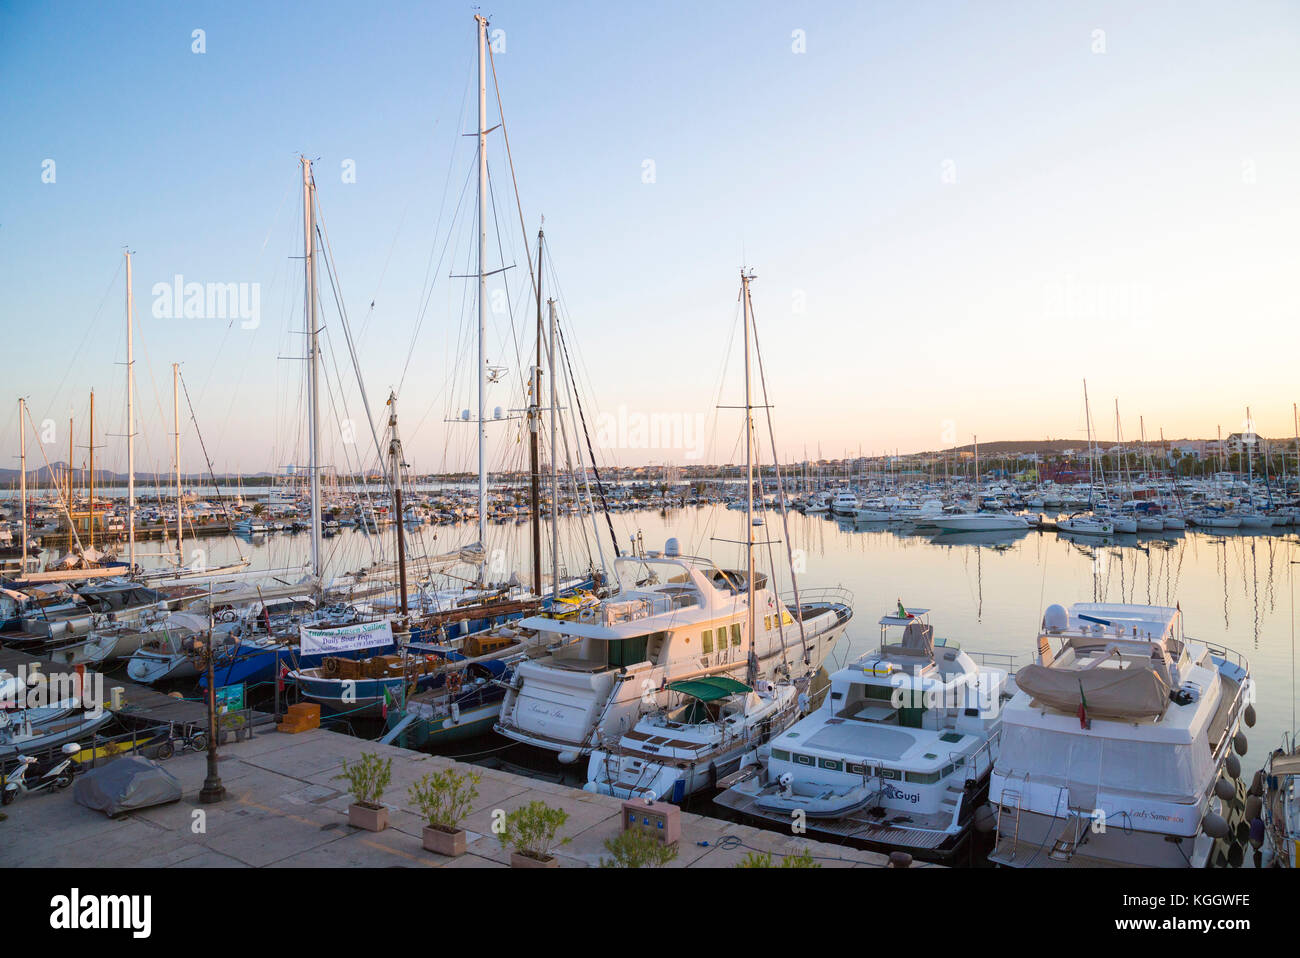 Alghero yacht basin à partir d'une vue avec des yachts amarrés en eaux calmes Banque D'Images